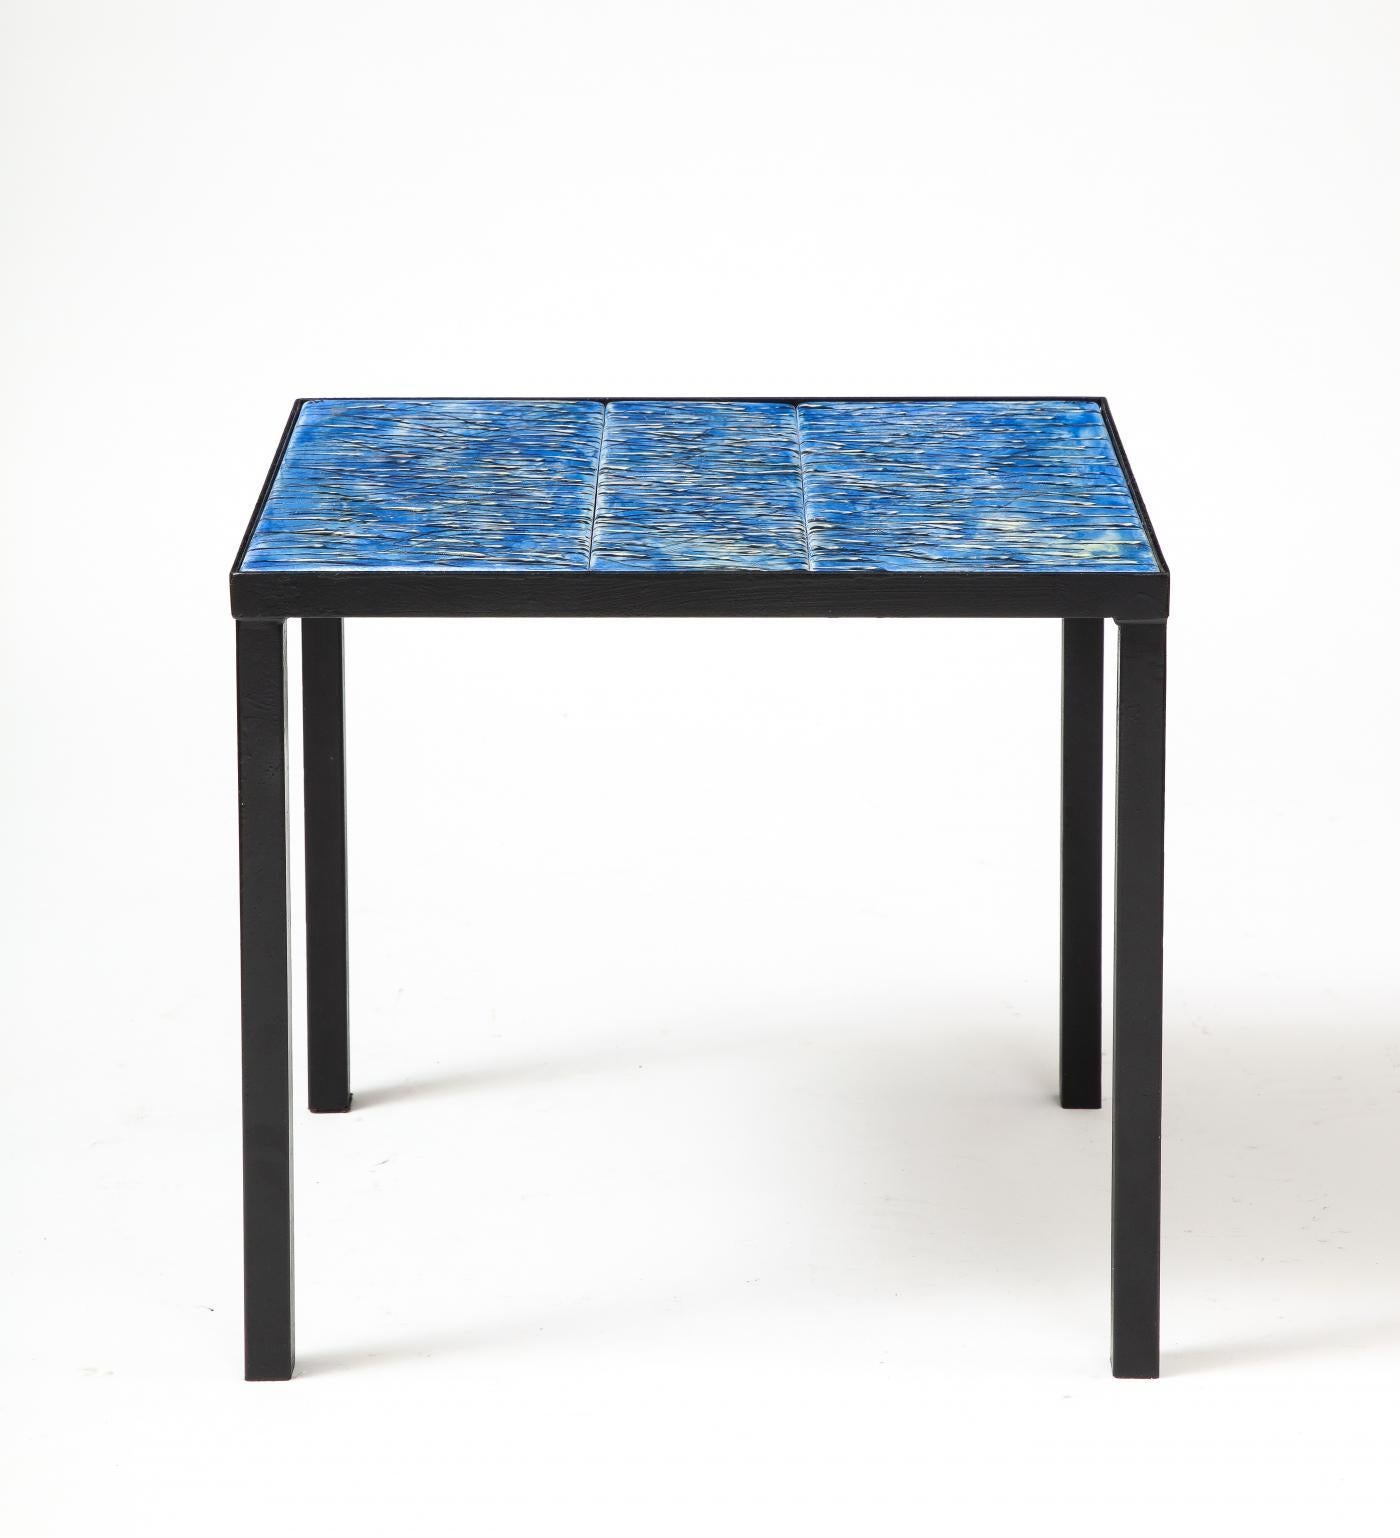 Table d'appoint moderne et minimaliste avec des carreaux peints à la main expressifs et parfaitement intégrés.